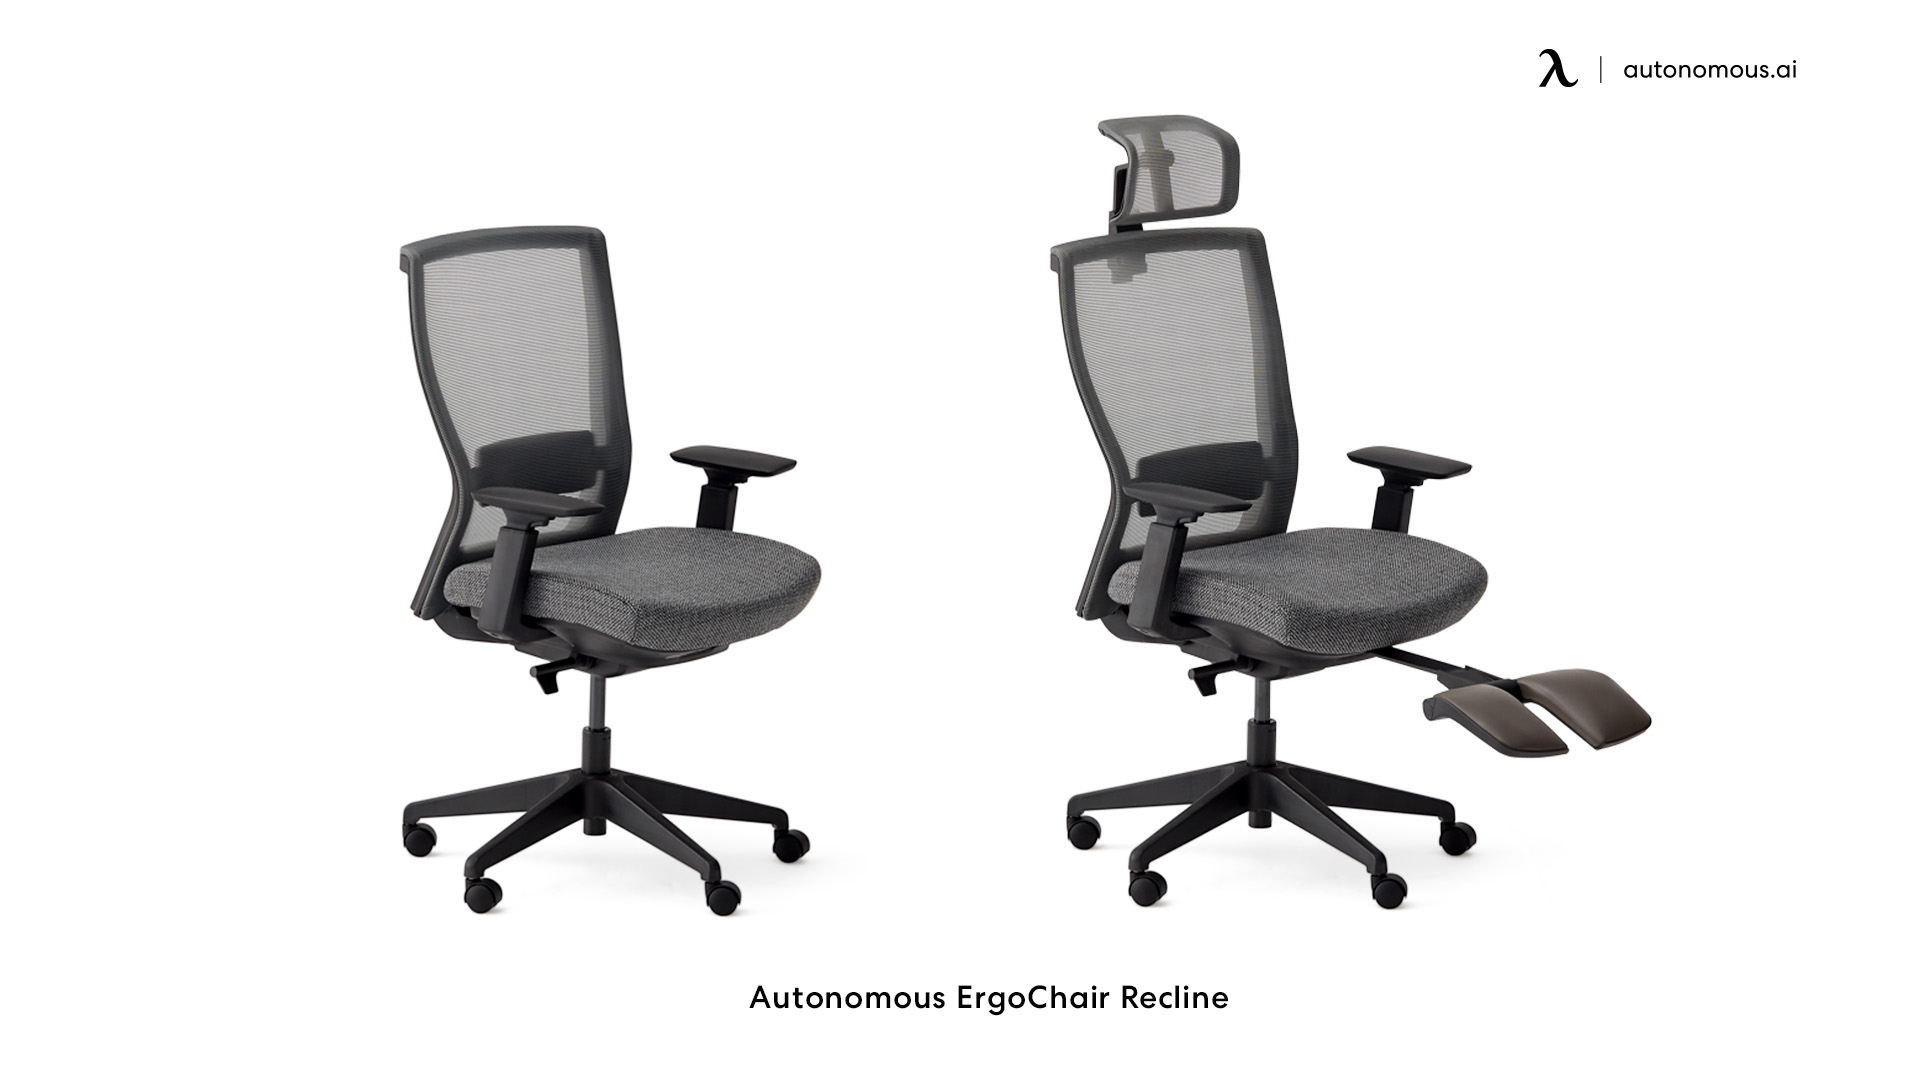 Autonomous ErgoChair Recline gaming chair with tilt lock